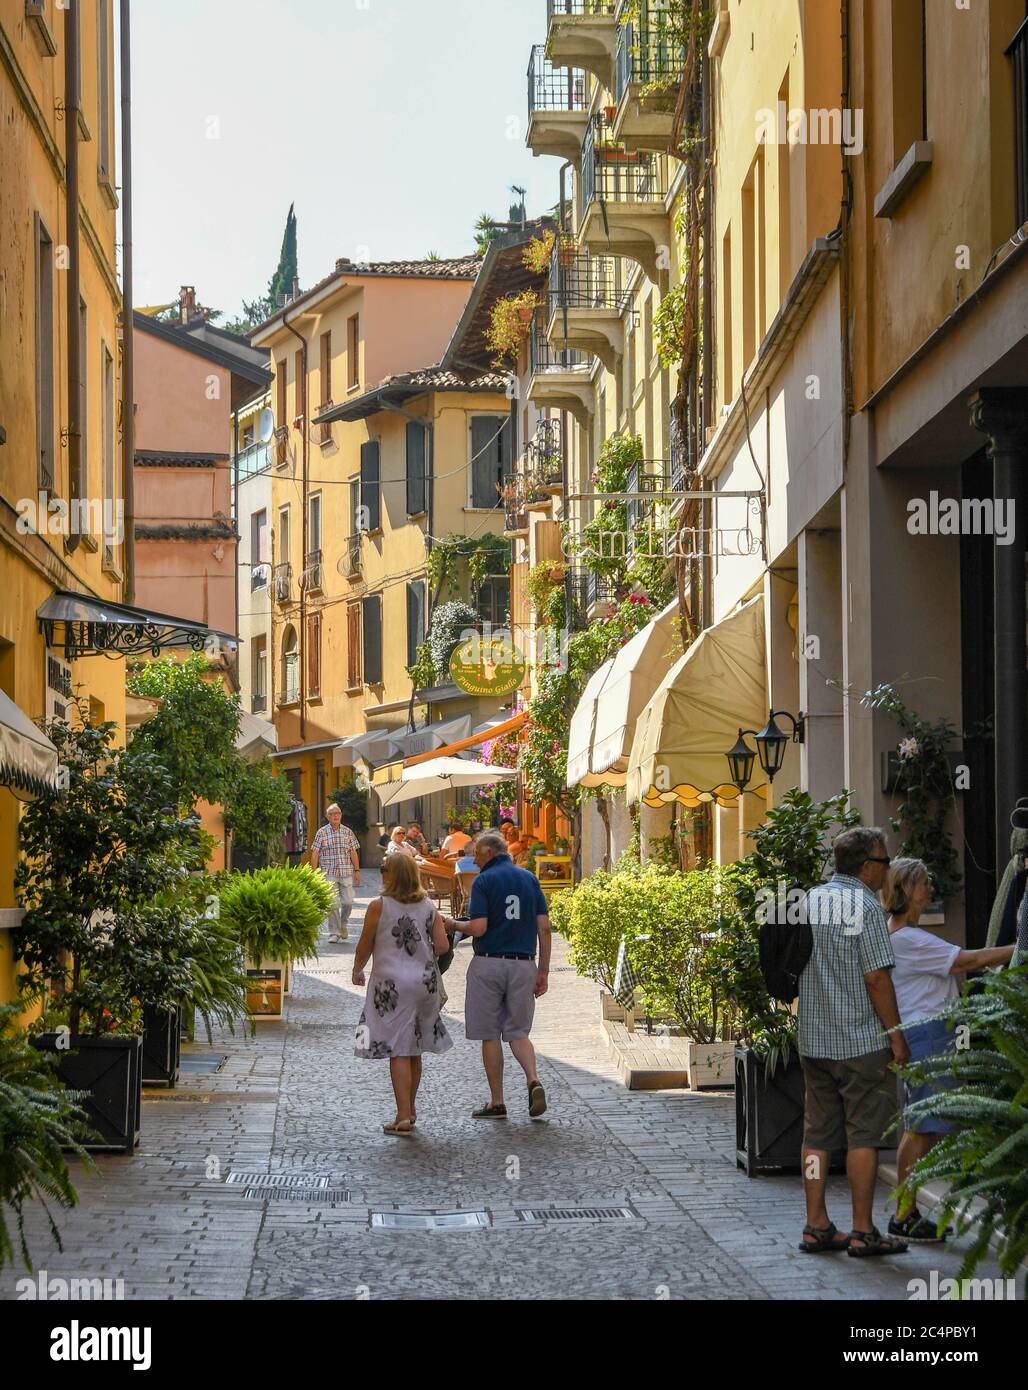 GARDONE RIVIERA, ITALIEN - SEPTEMBER 2018: Menschen, die eine schmale Straße entlang in Gardone Riviera am Gardasee gehen. Stockfoto